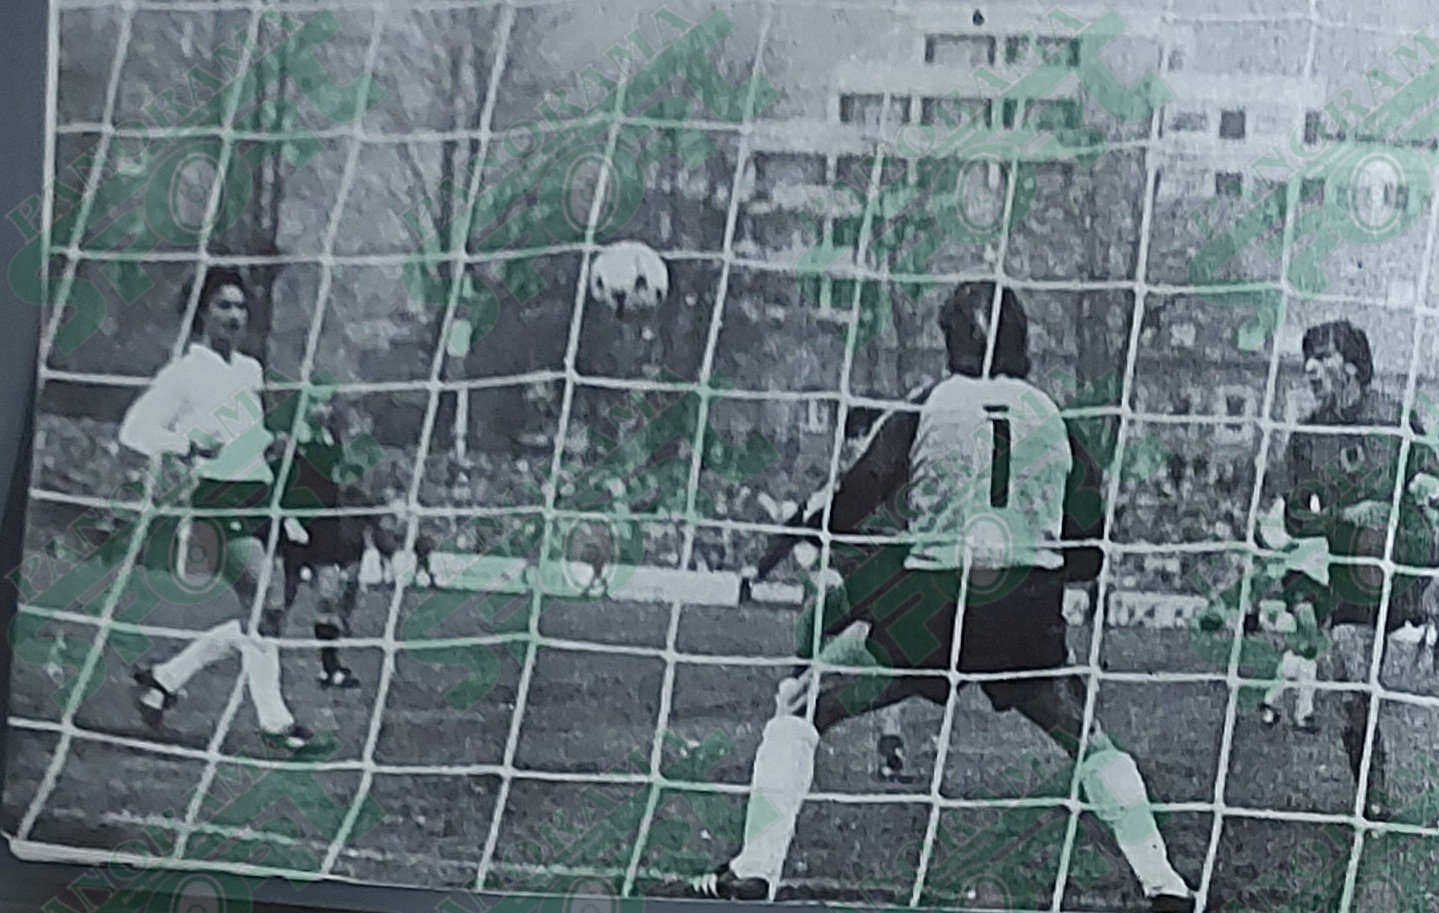 Kjo foto nuk është e ndeshjes me Austrinë, por e ndeshjes së madhe të fundit (19 nëntor 1983) kur Shqipëria eliminonte në Trier Gjermaninë mbas barazimit 1-1. Dhe në këte cikël që po e fillojmë sot, do të përpiqemi që në çdo kapitull të ketë një foto nga kjo ndeshje përcaktuese. Veprojmë kështu për të kujtuar sa më mirë këtë ndeshje historike, por edhe për të mënjanuar varfërinë e fotove të munguara nga ndeshjet e tjera. Në foto është një sulm i Shqipërisë, ku futbollisti shqiptar Topçiu përpak sa nuk shënon në portën e Gjermanisë.